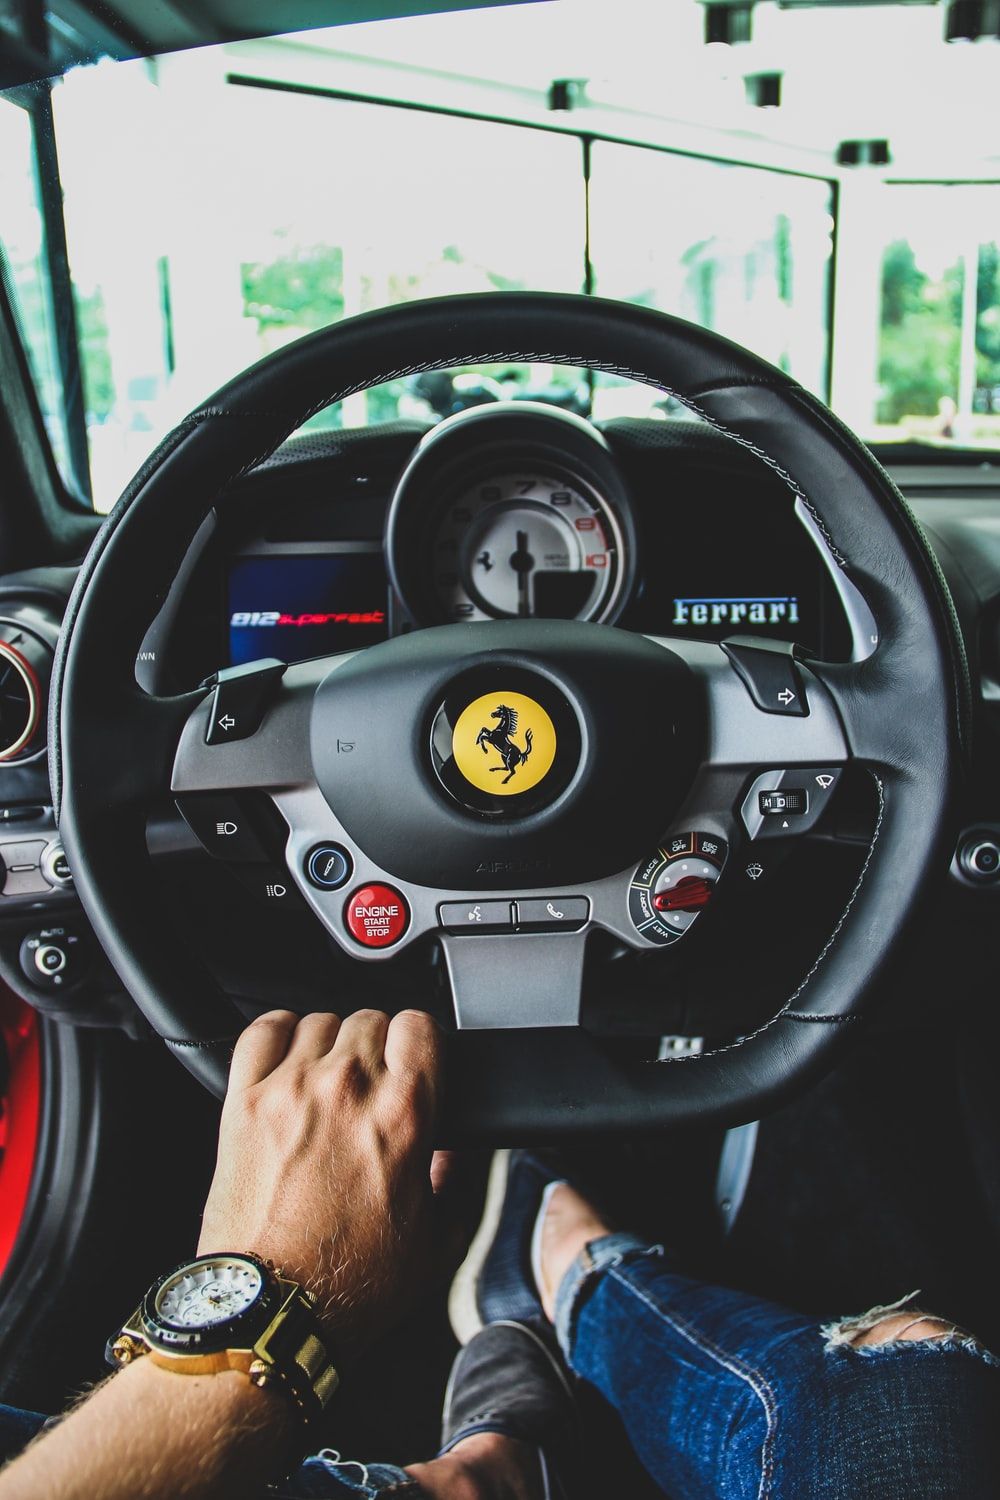 Ferrari Picture. Download Free Image